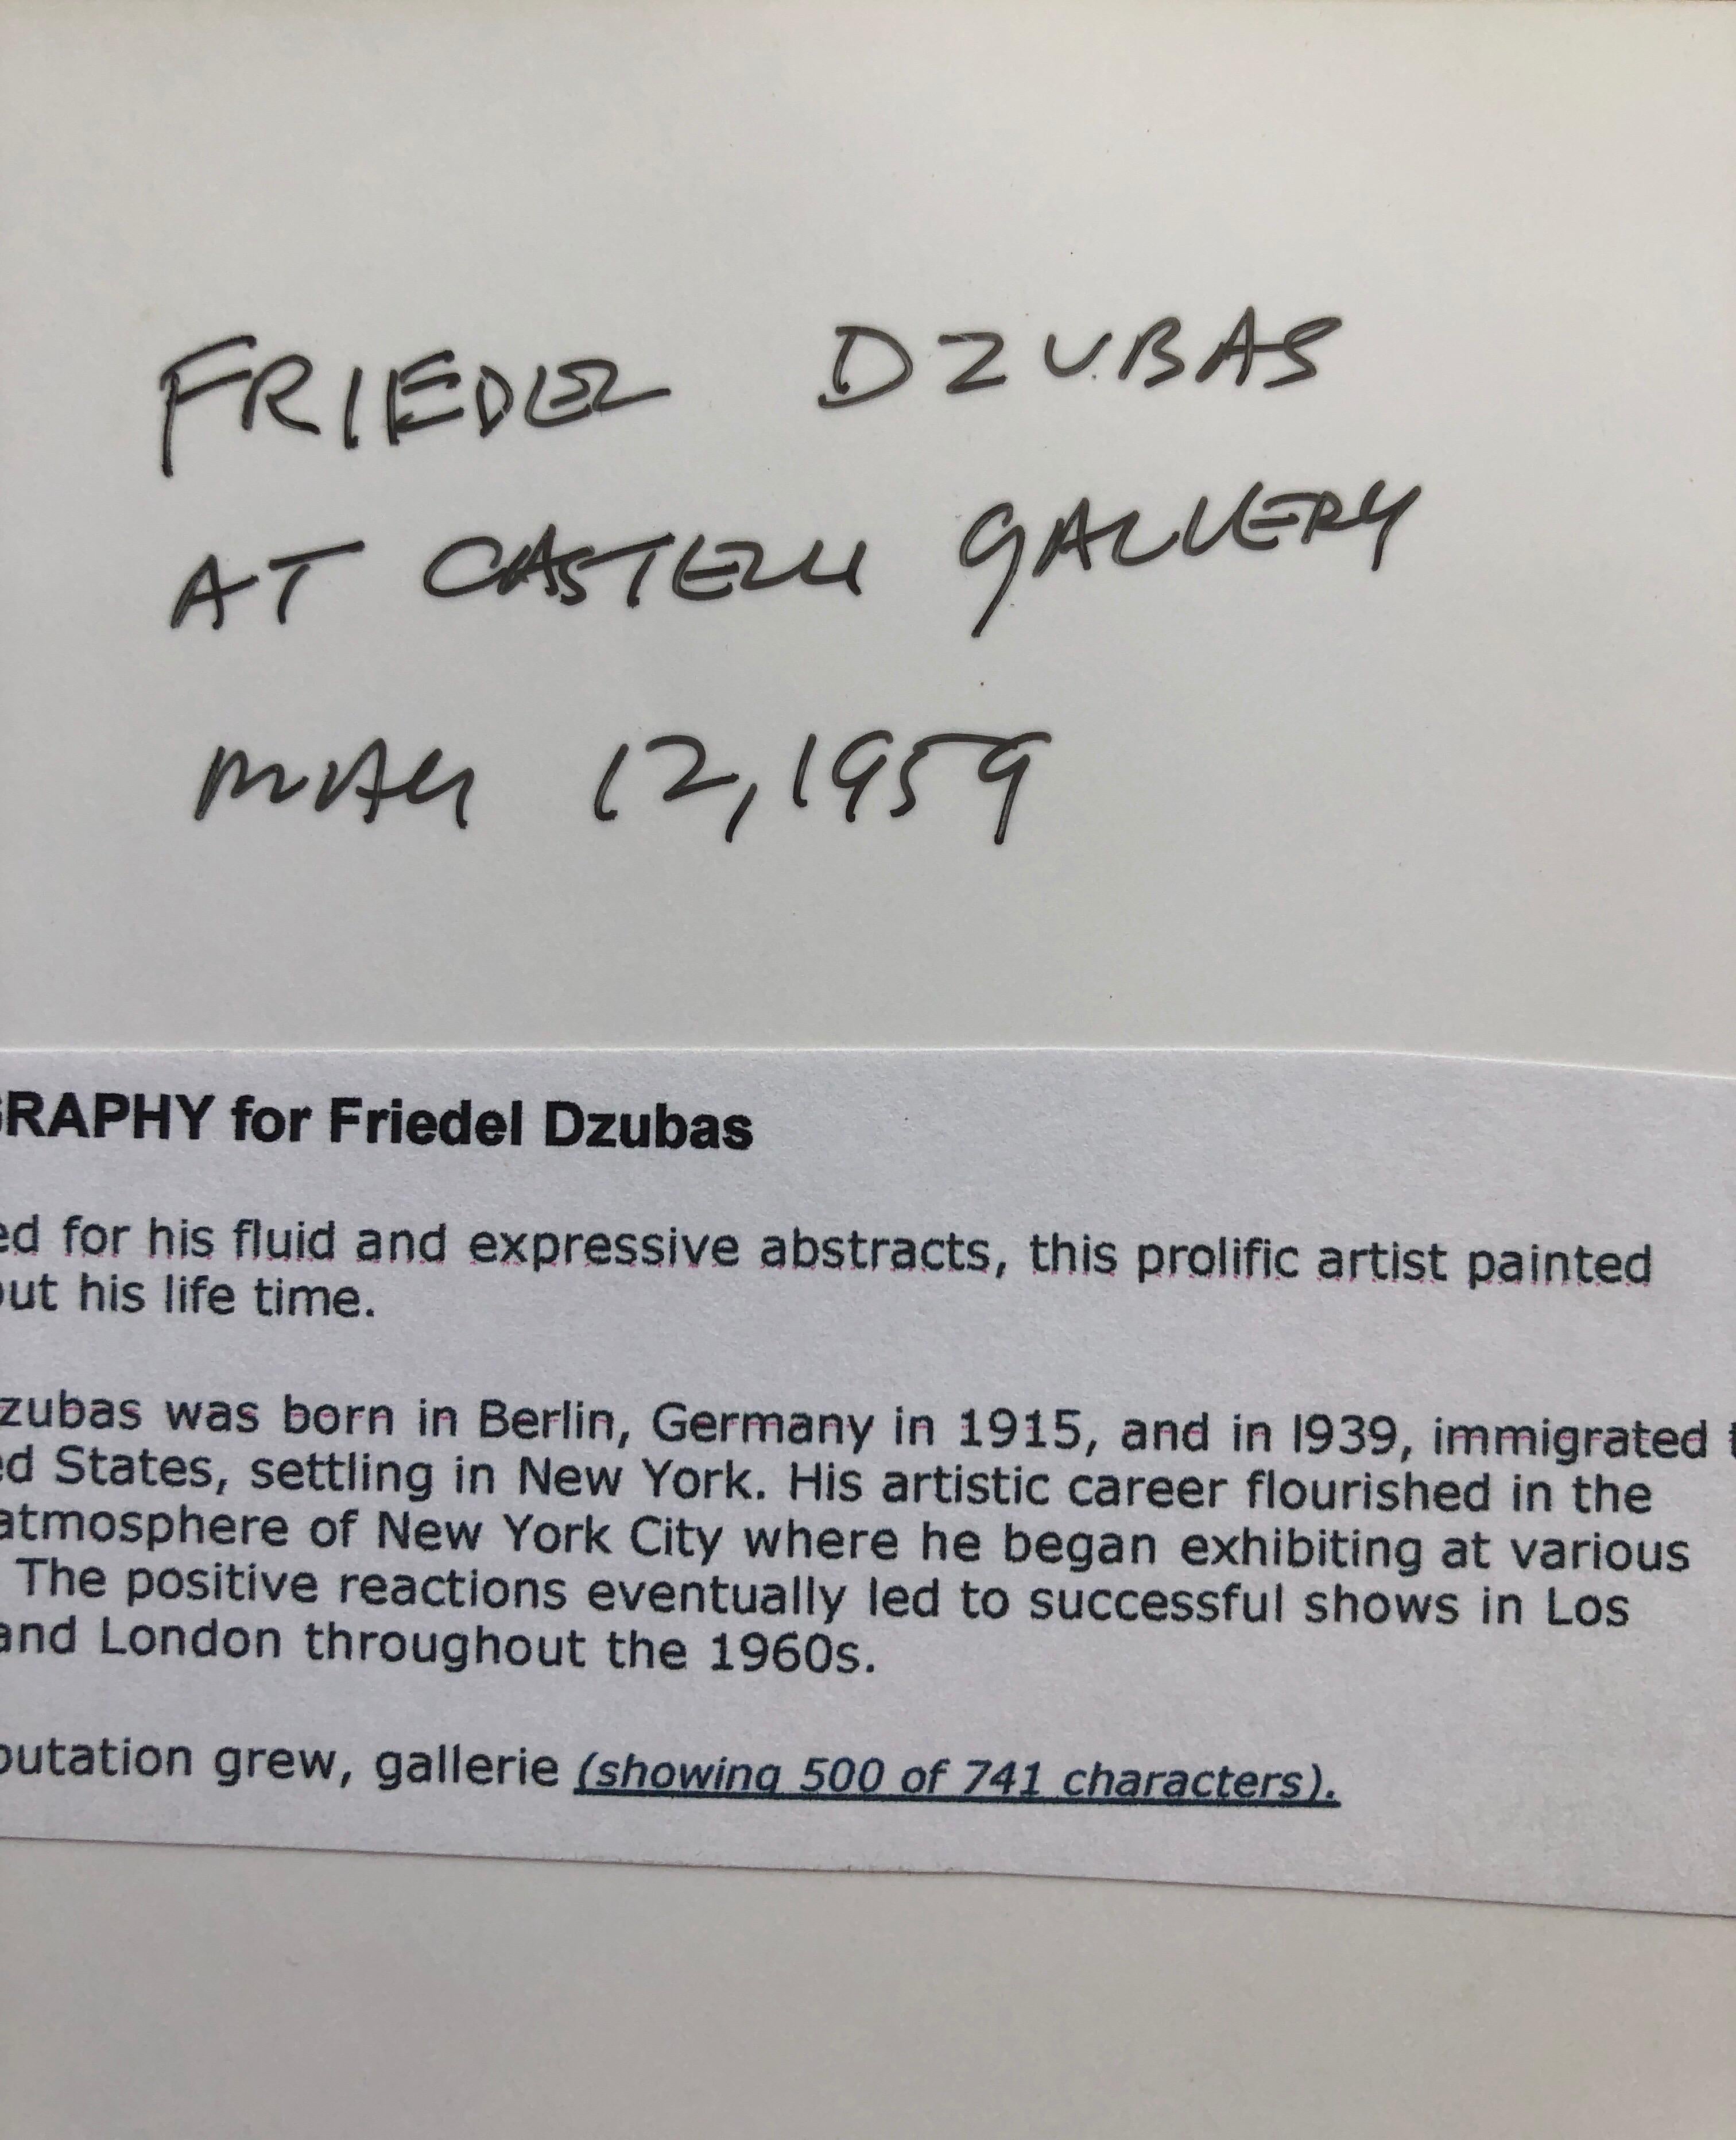  Dies ist ein Foto von Friedl Dzubas (Abstrakter Expressionist) in der Castelli Gallery, signiert in Tinte und mit Fotografenstempel verso und handschriftlichem Titel.

Über einen Zeitraum von 50 Jahren dokumentierte McDarrah den Aufstieg der